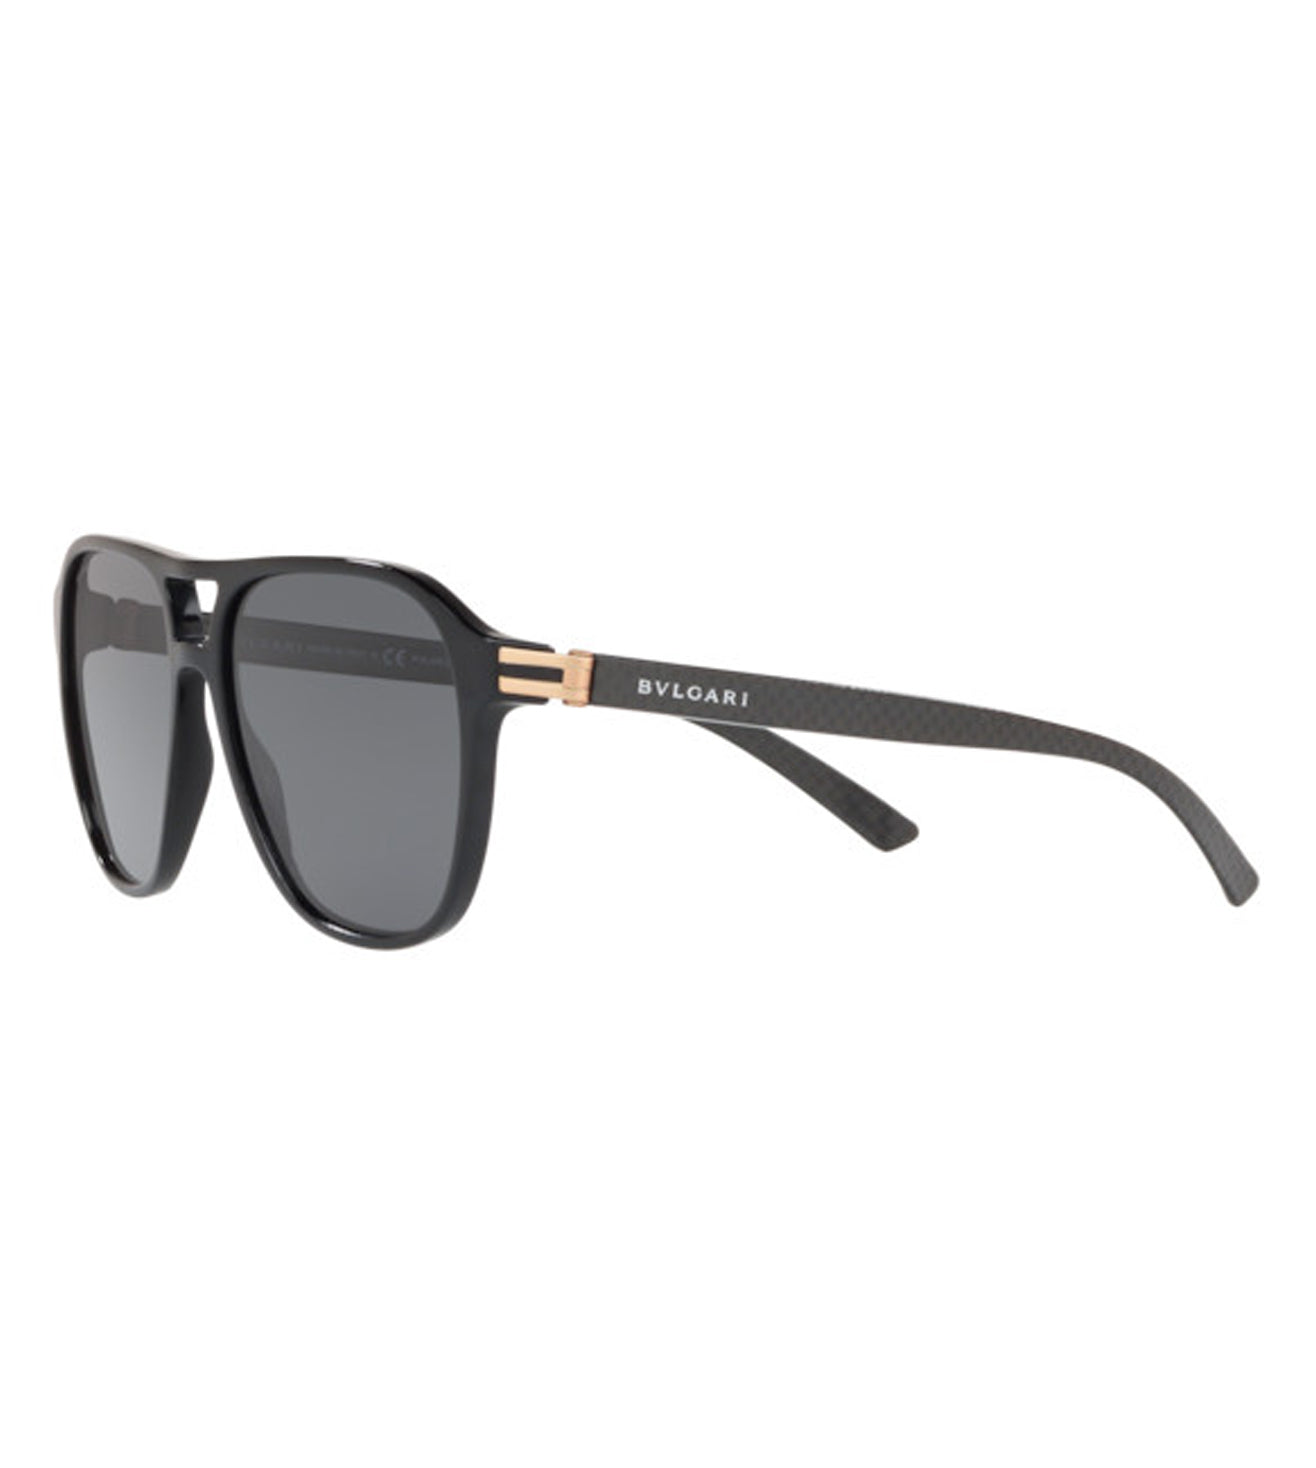 Bvlgari Men's Grey Aviator Sunglasses